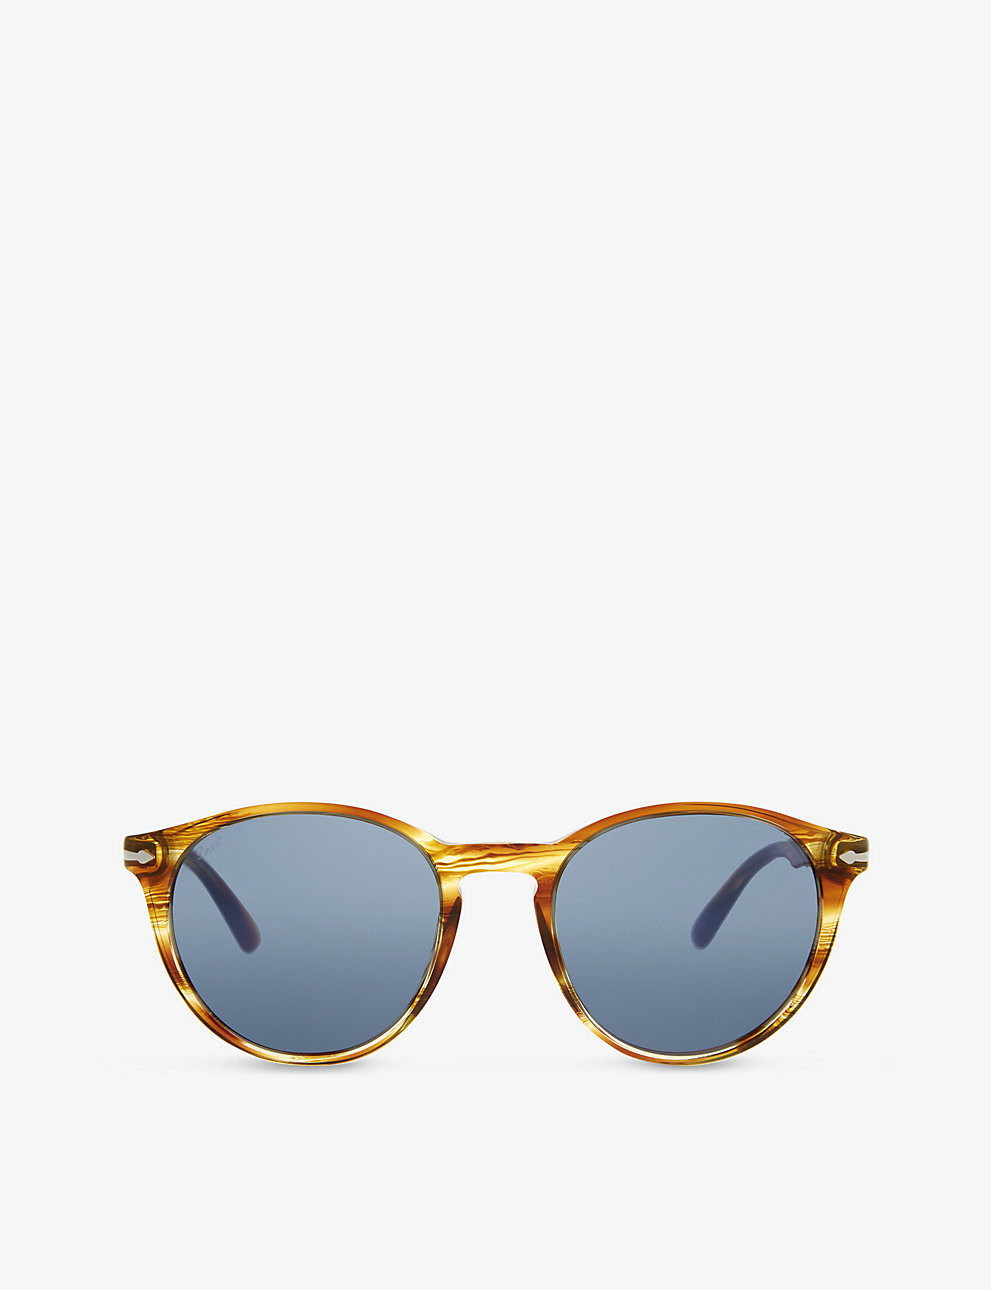 PO3152S Round-frame Sunglasses,  Persol 